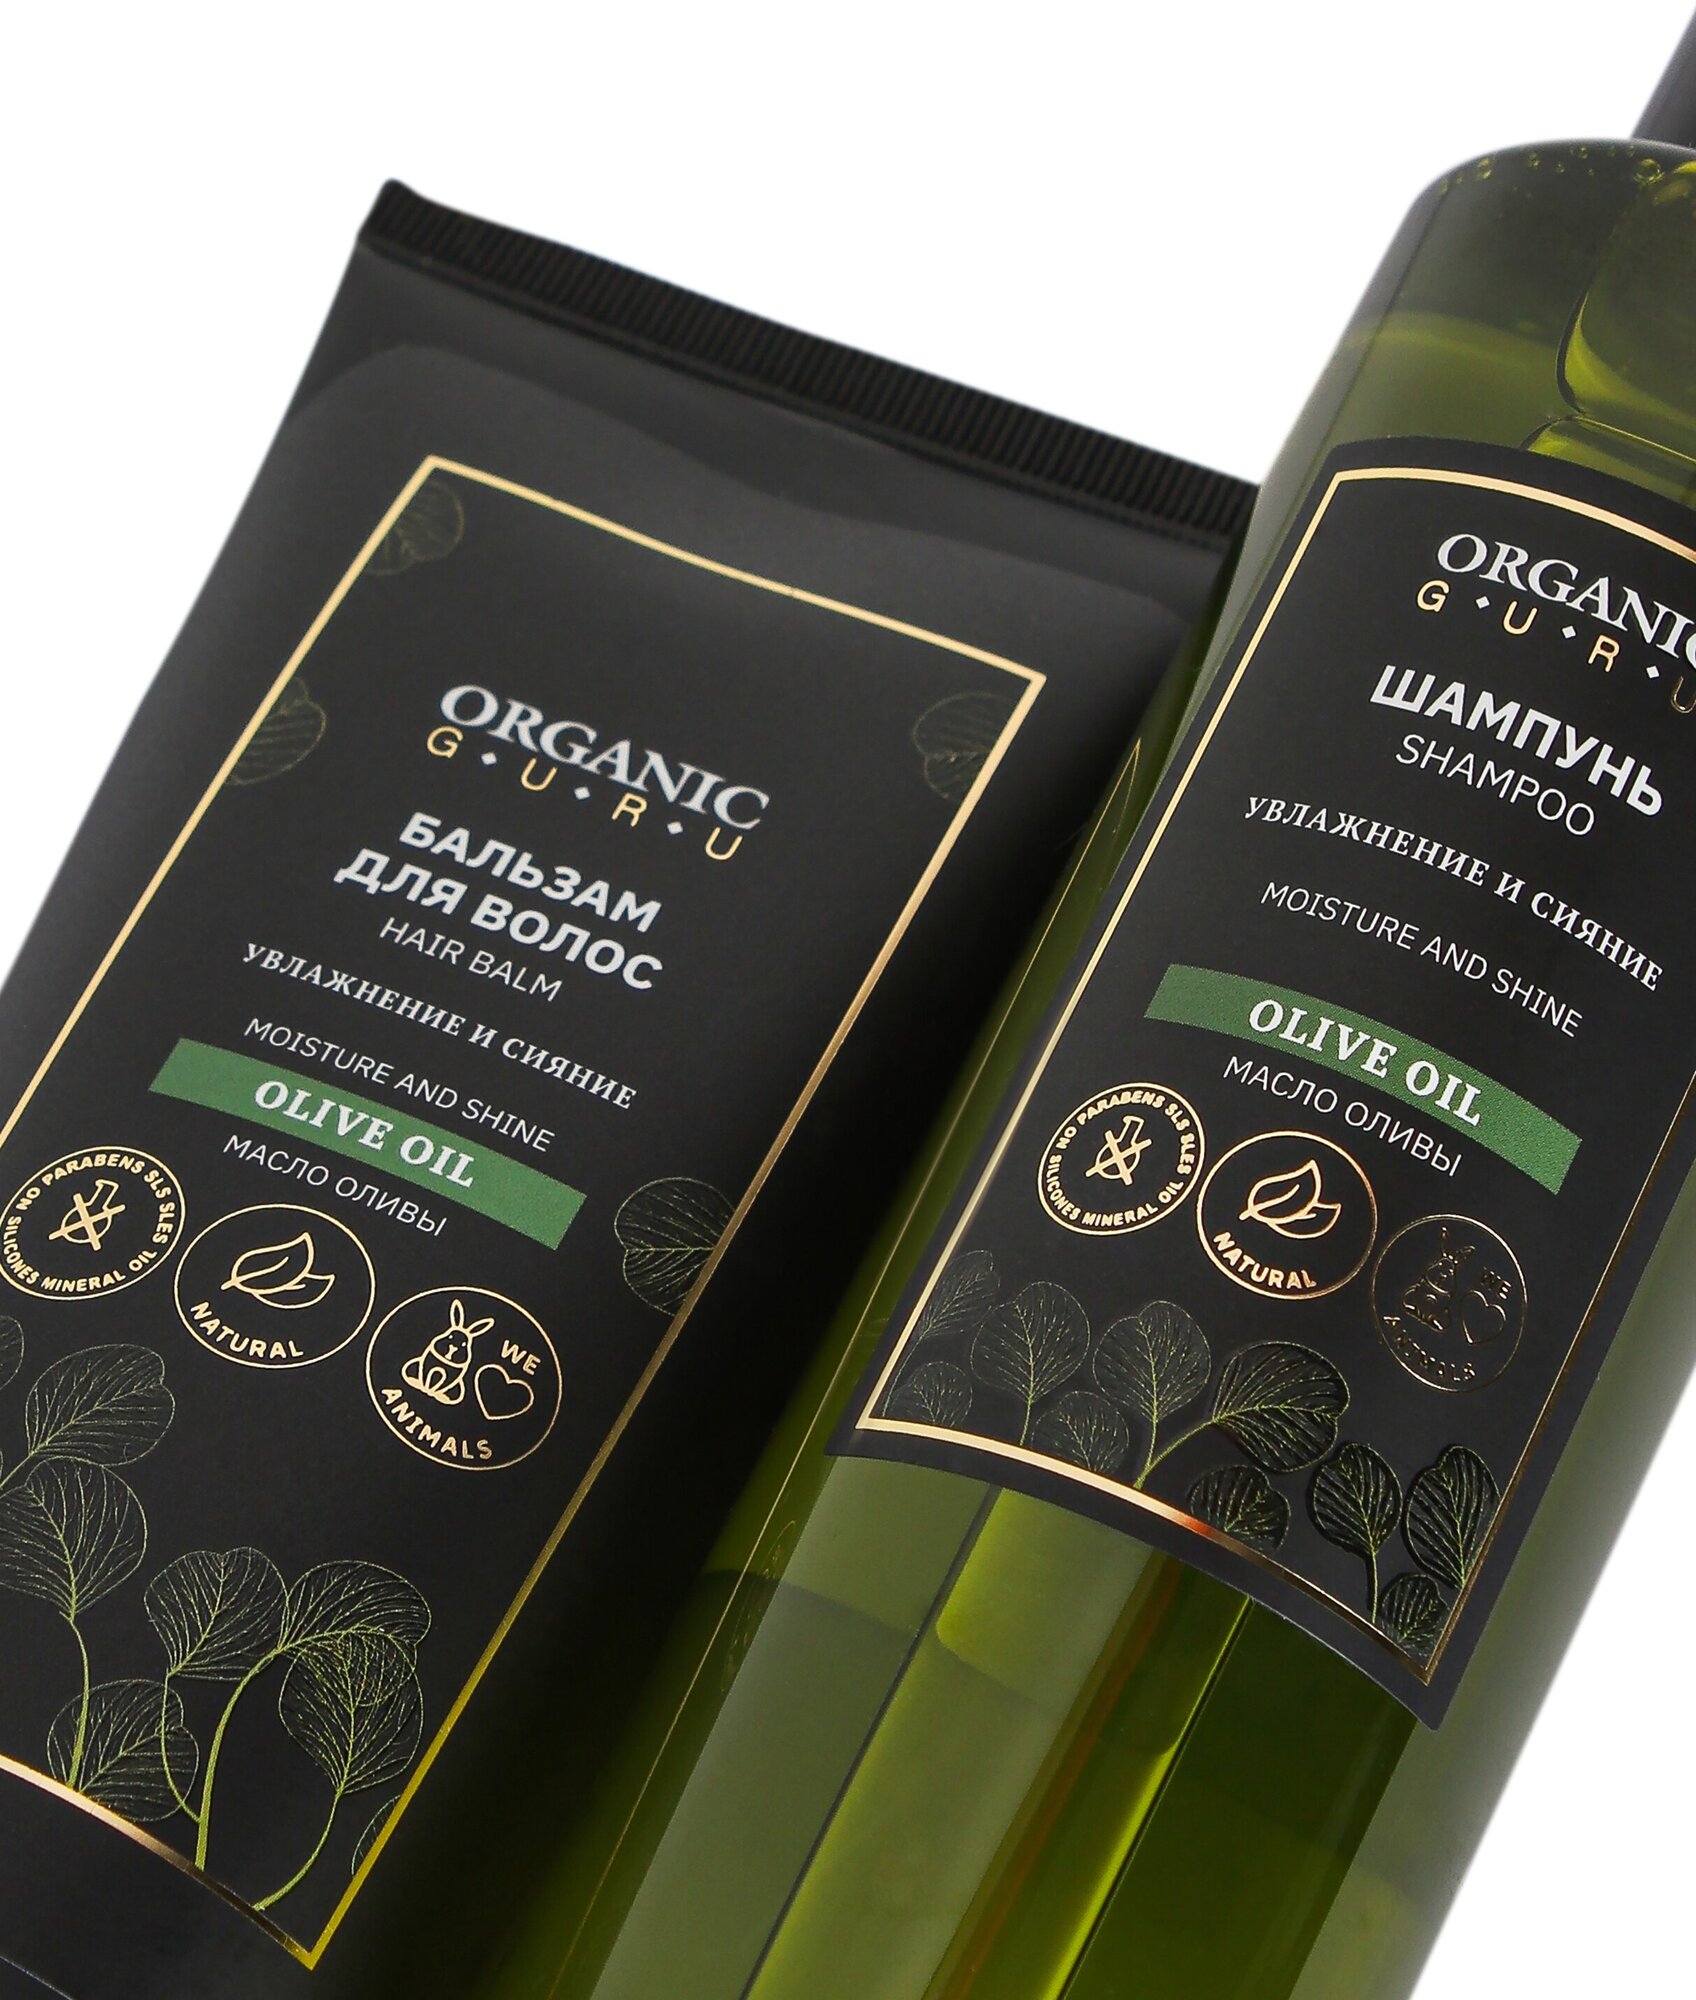 Шампунь для волос "Оливковое масло" 250 ml. + Бальзам ополаскиватель "Olive OIL" 200 ml. Без SLS и парабенов, бессульфатный, органический.